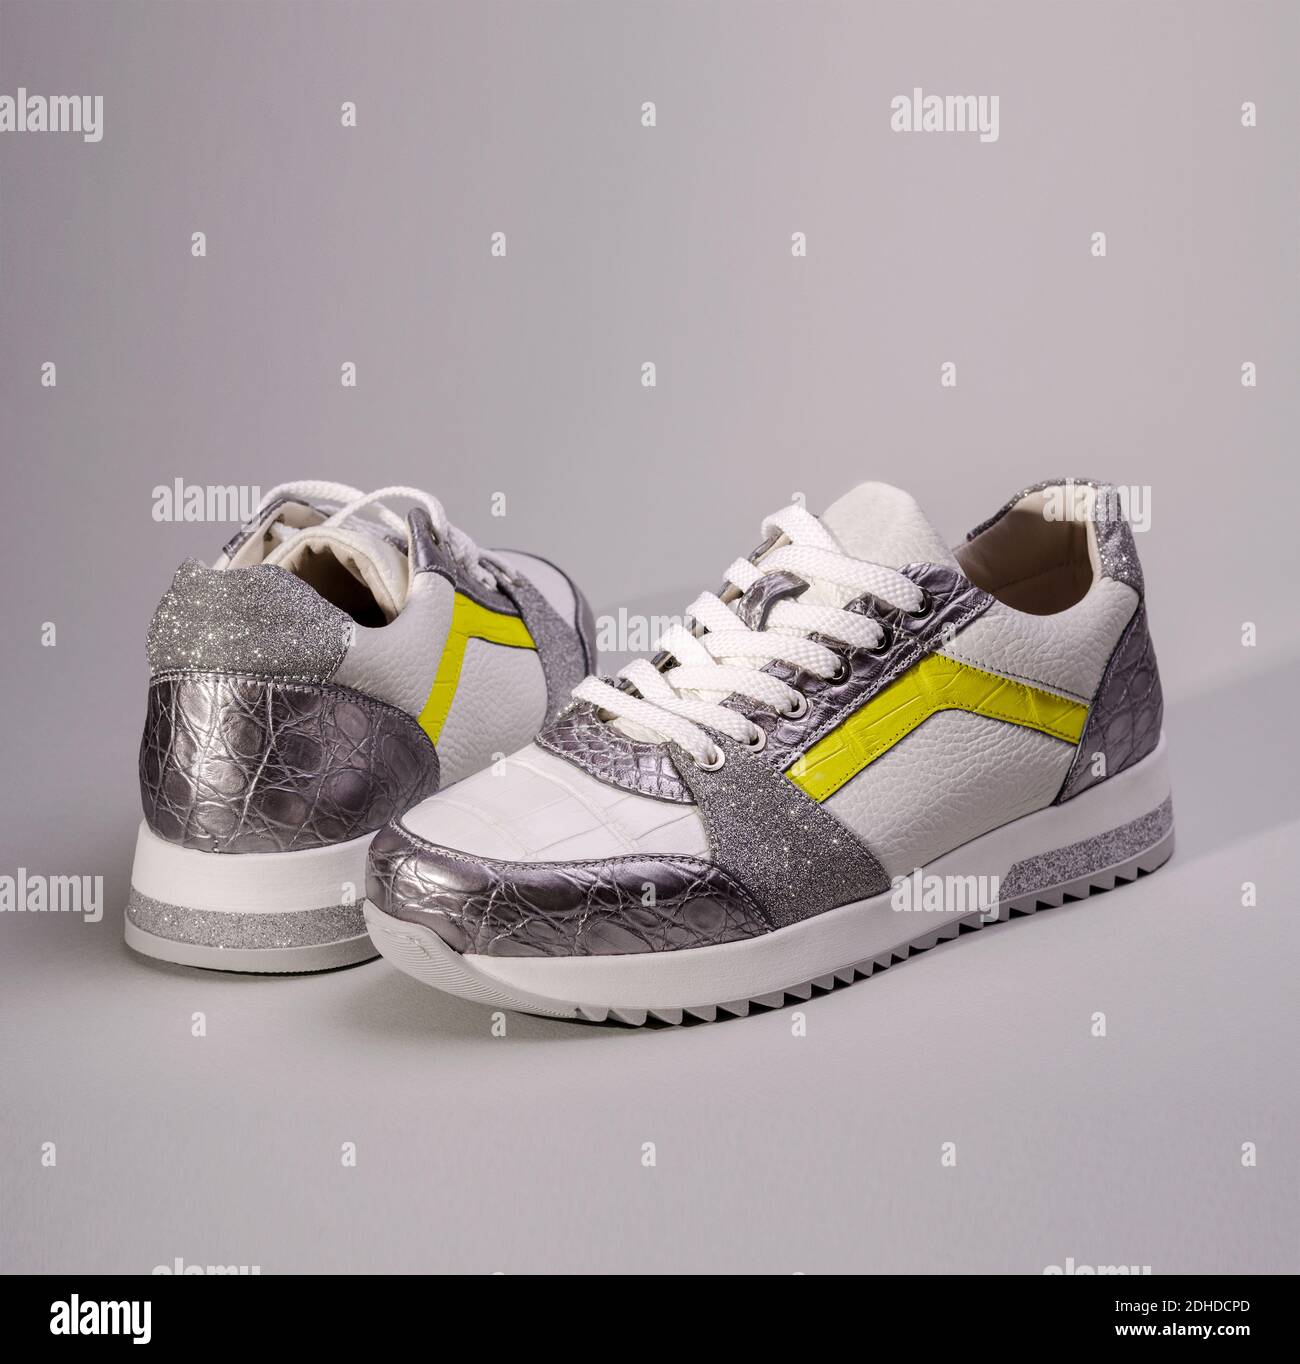 Zwei Fashion Sneakers Schuhe in ultimativen grauen und leuchtenden gelben  Farben des Jahres 2021. Modische Damen-Sportschuhe Stockfotografie - Alamy